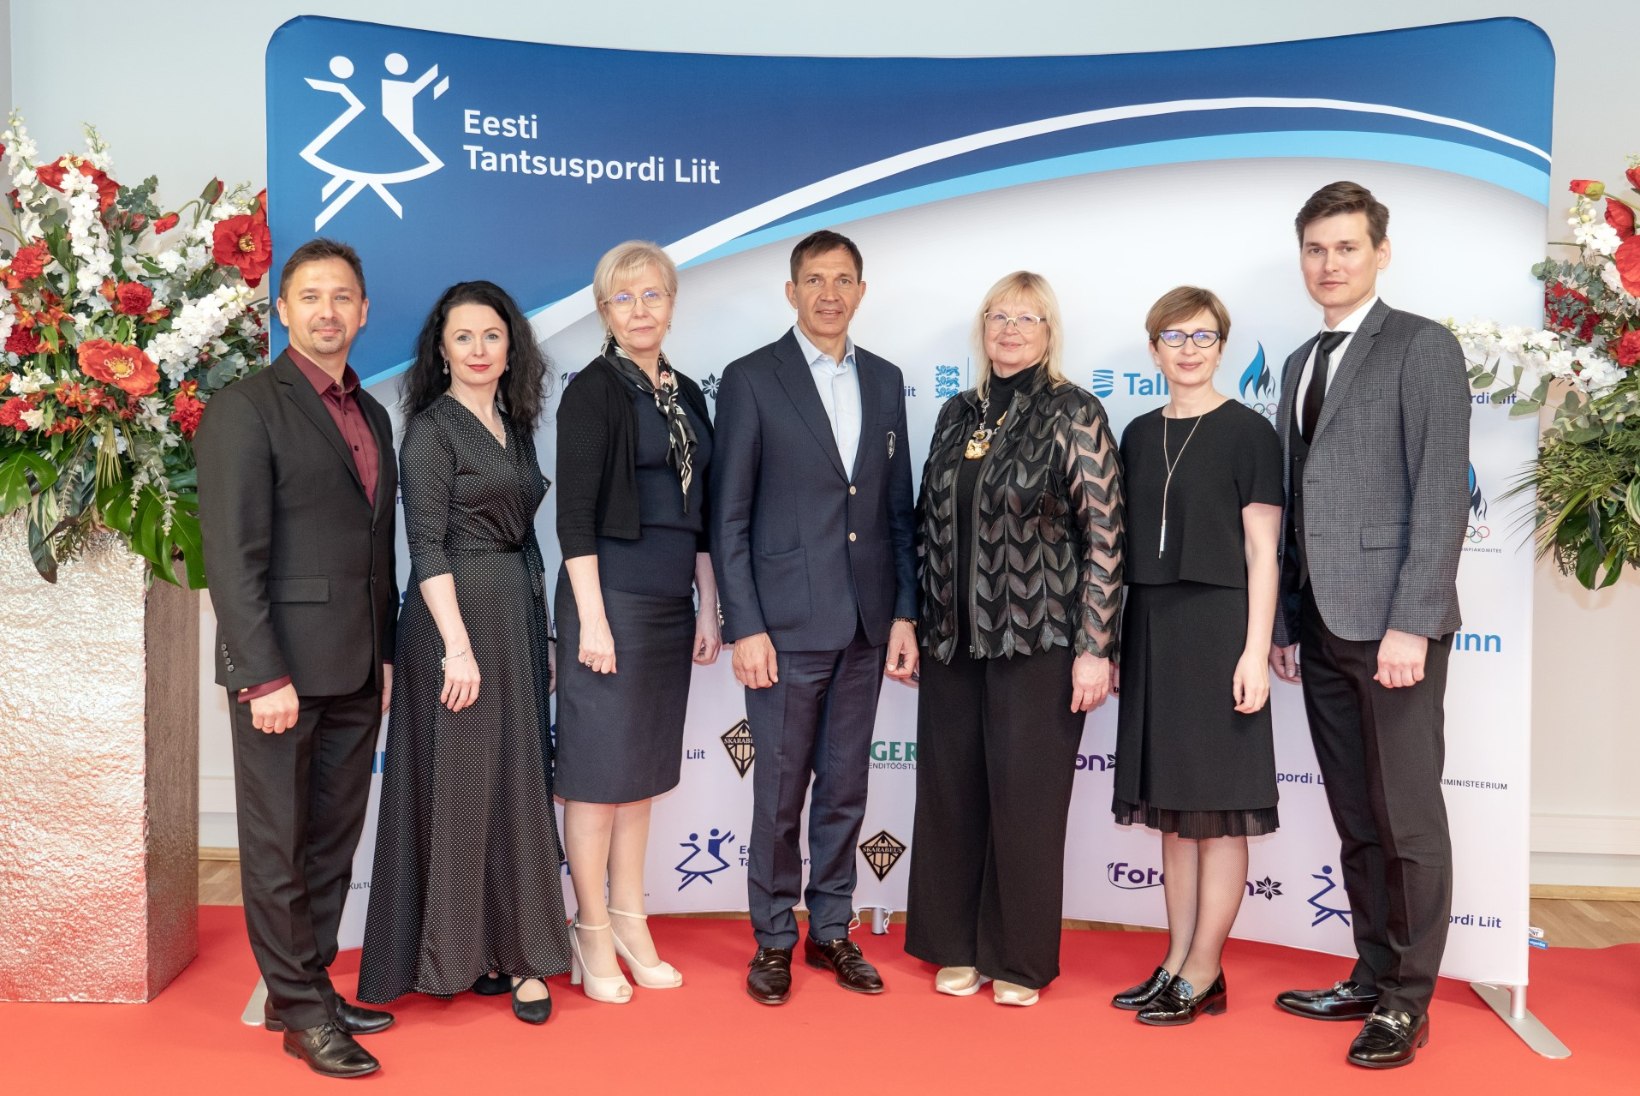 Eesti Tantsuspordi Liit sai kaheksa auliiget